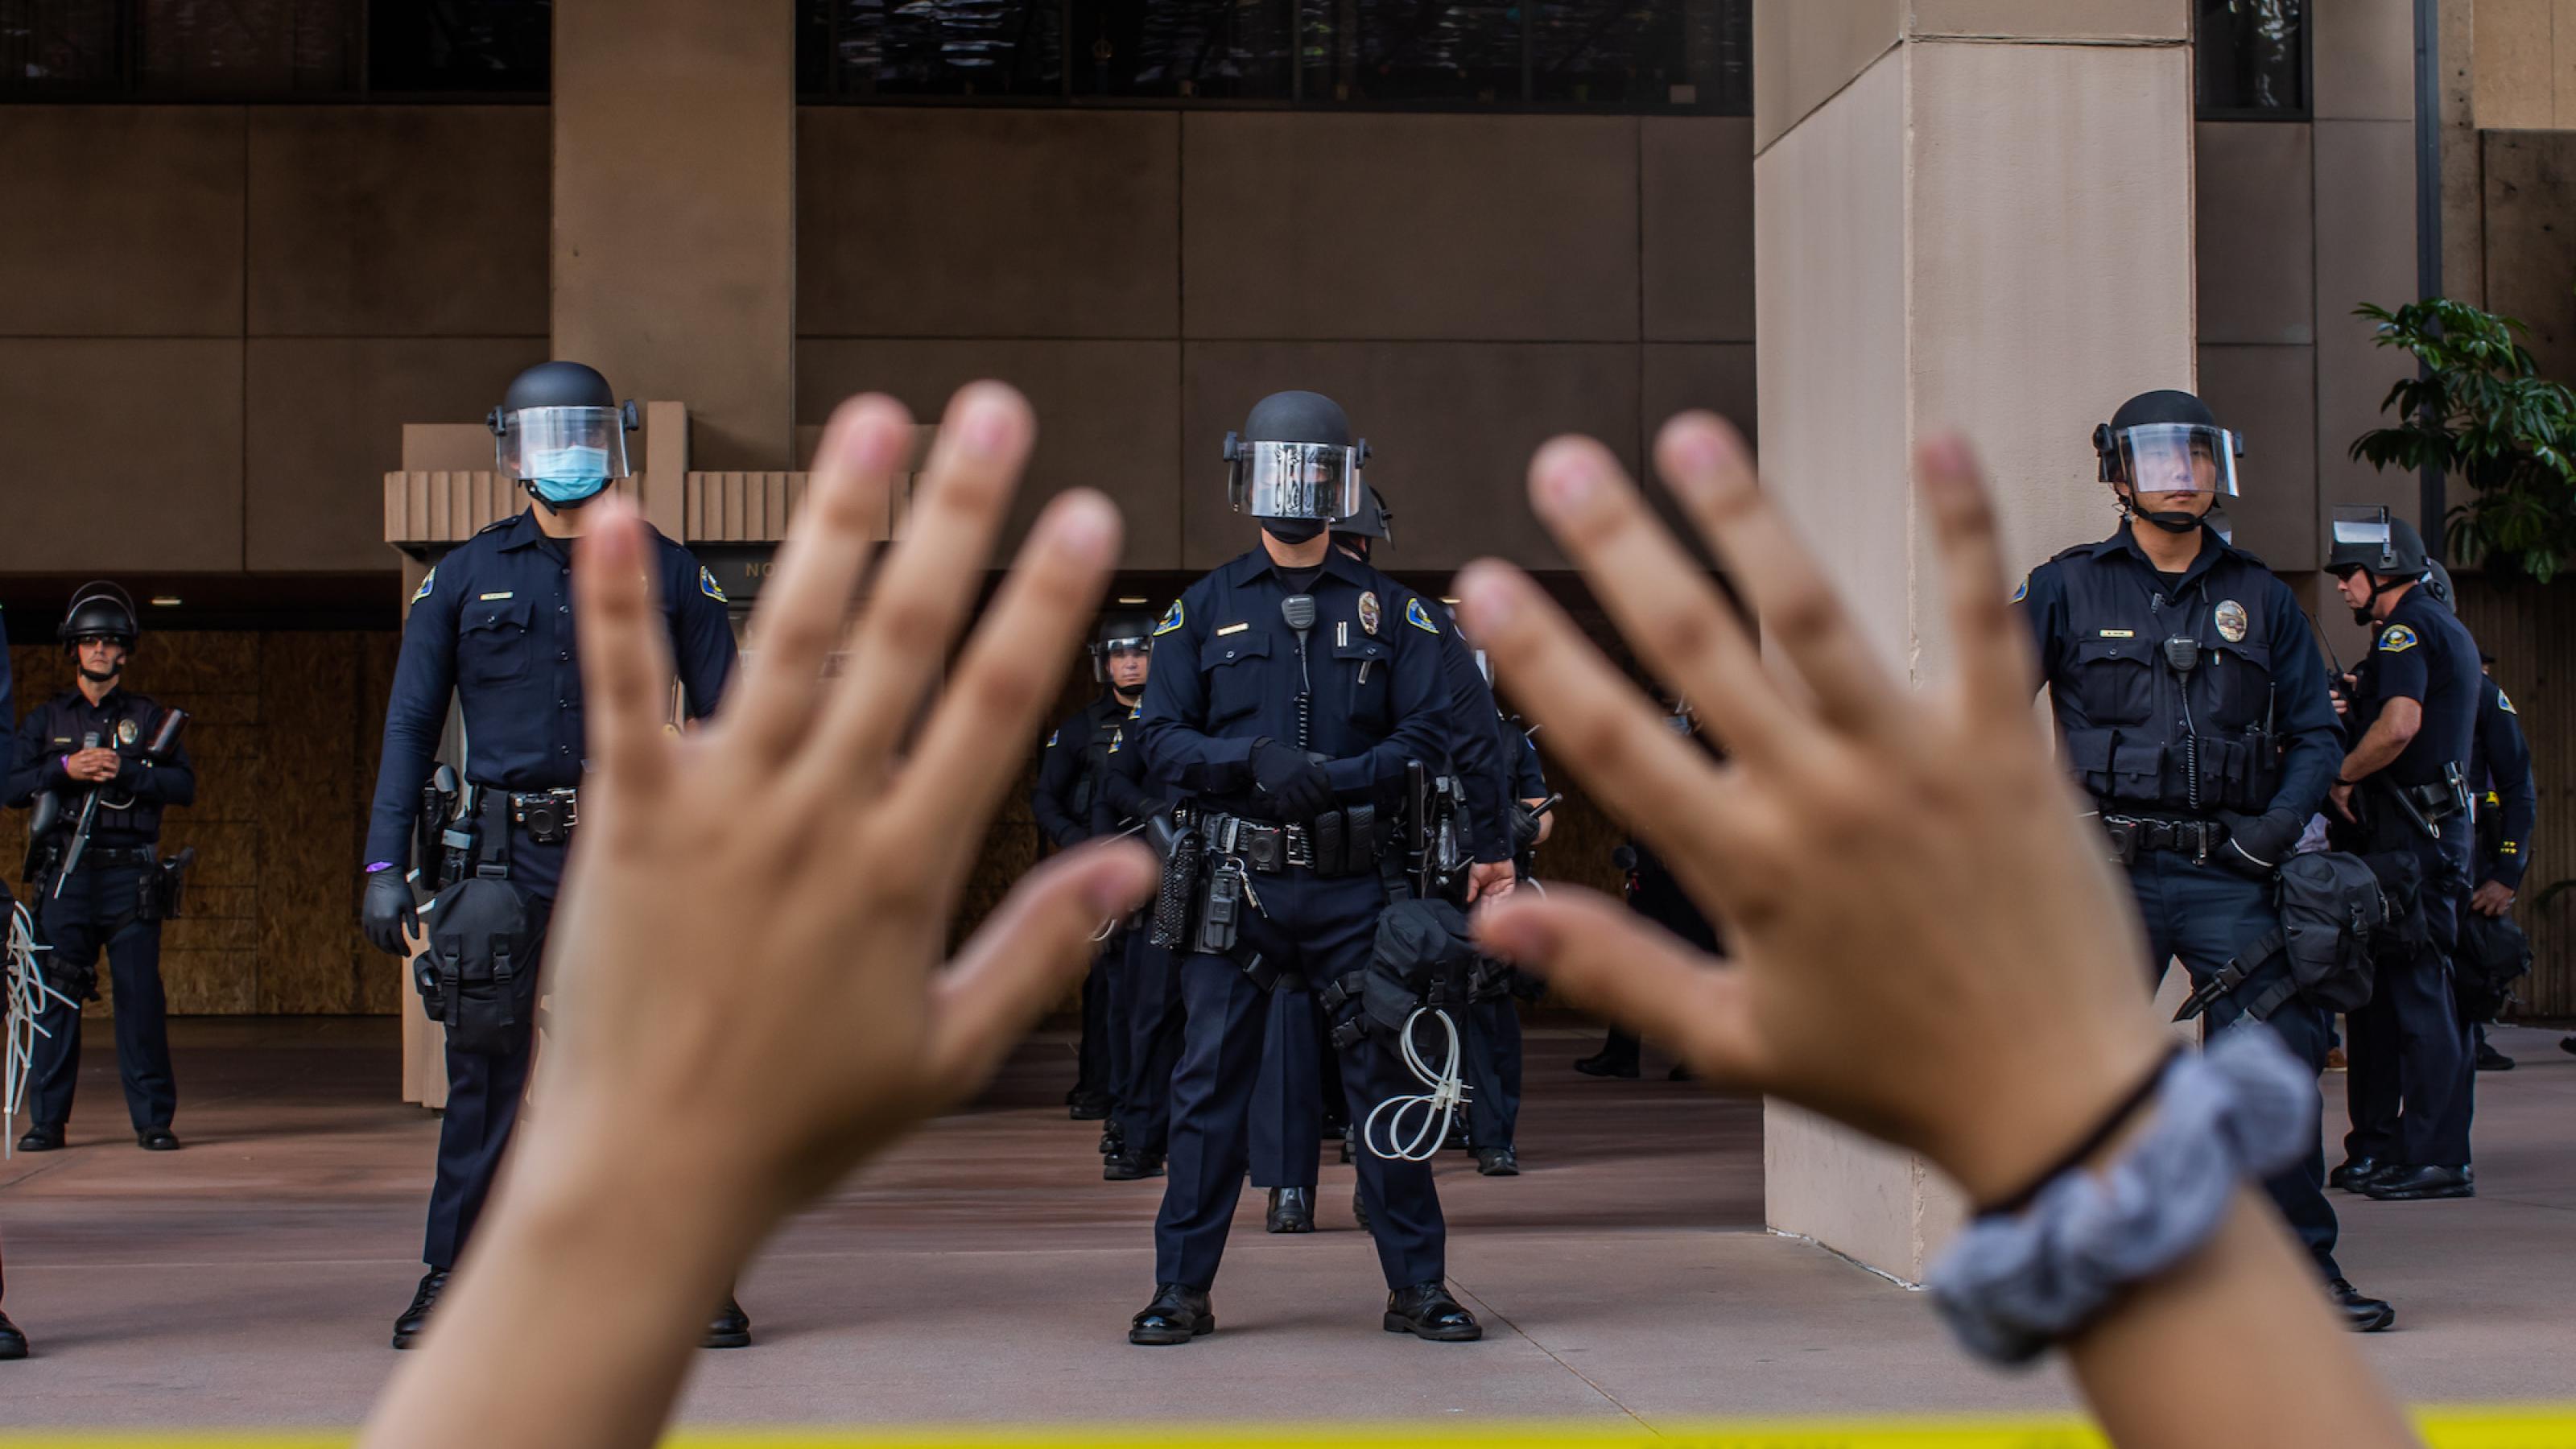 Ein Demonstrant hält seine Hände nach oben, während im Hintergrund Polizisten in Schutzausrüstung zu sehen sind.